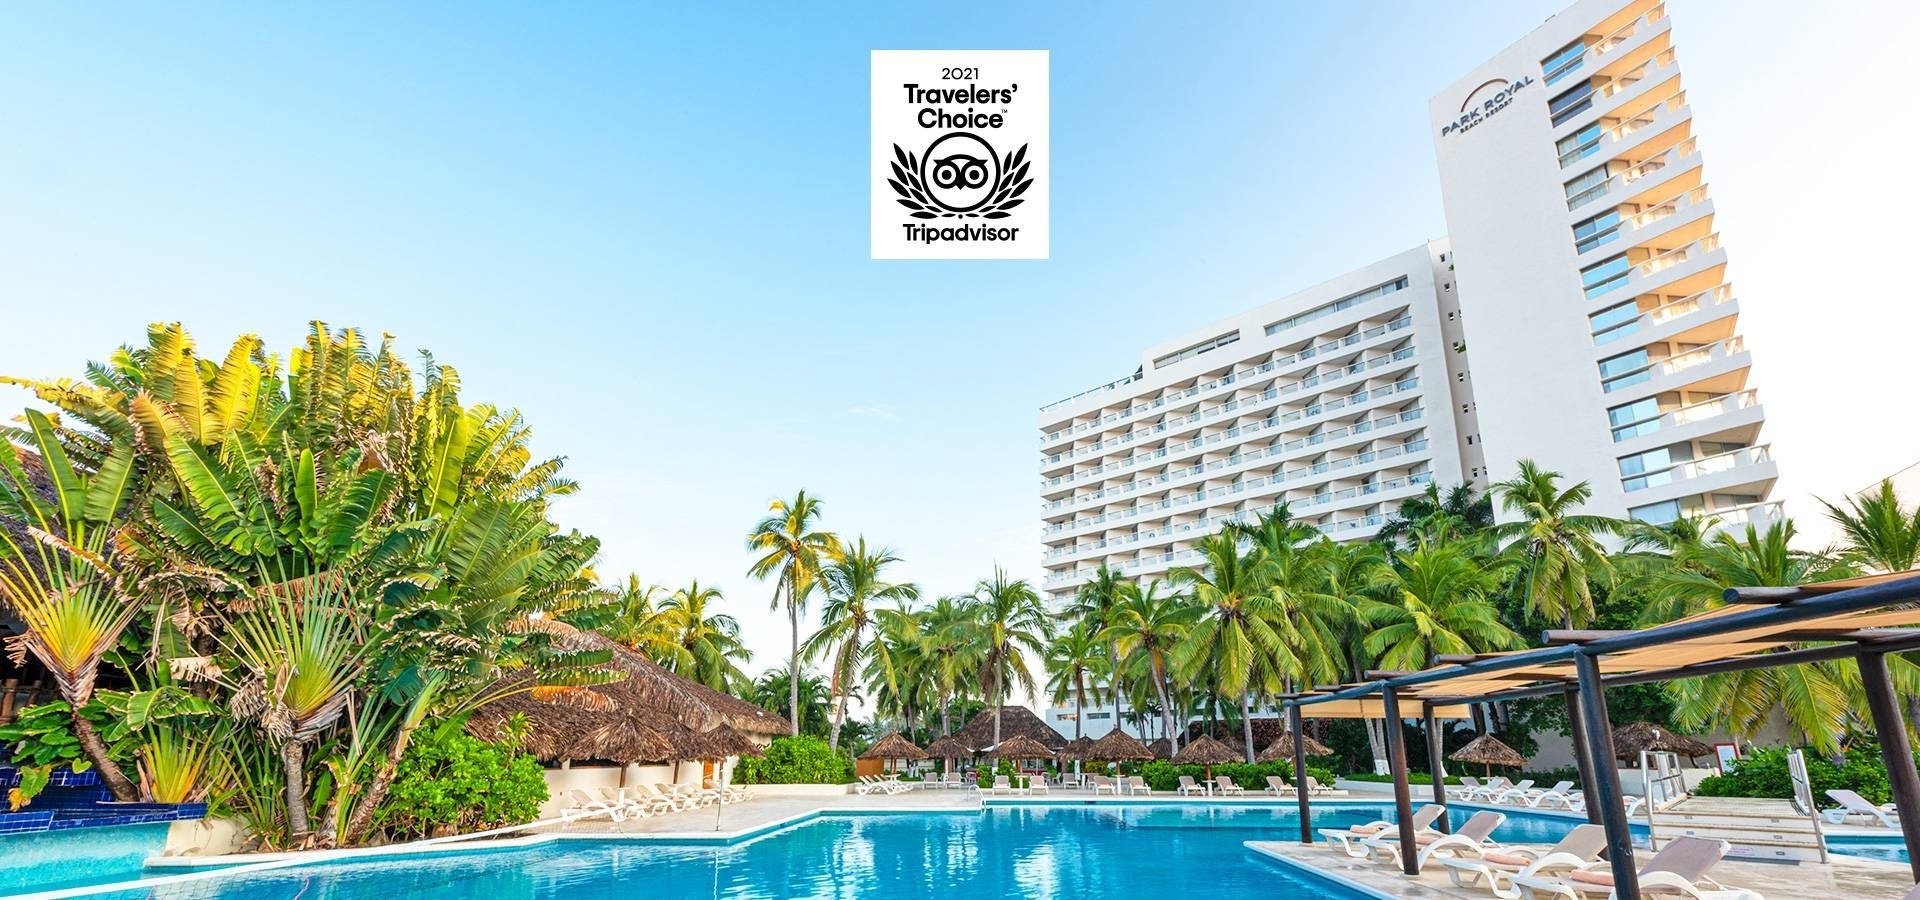 Panorámica del Hotel Park Royal Beach Ixtapa con el sello del Premio Travelers Choice 2021 por TripAdvisor 